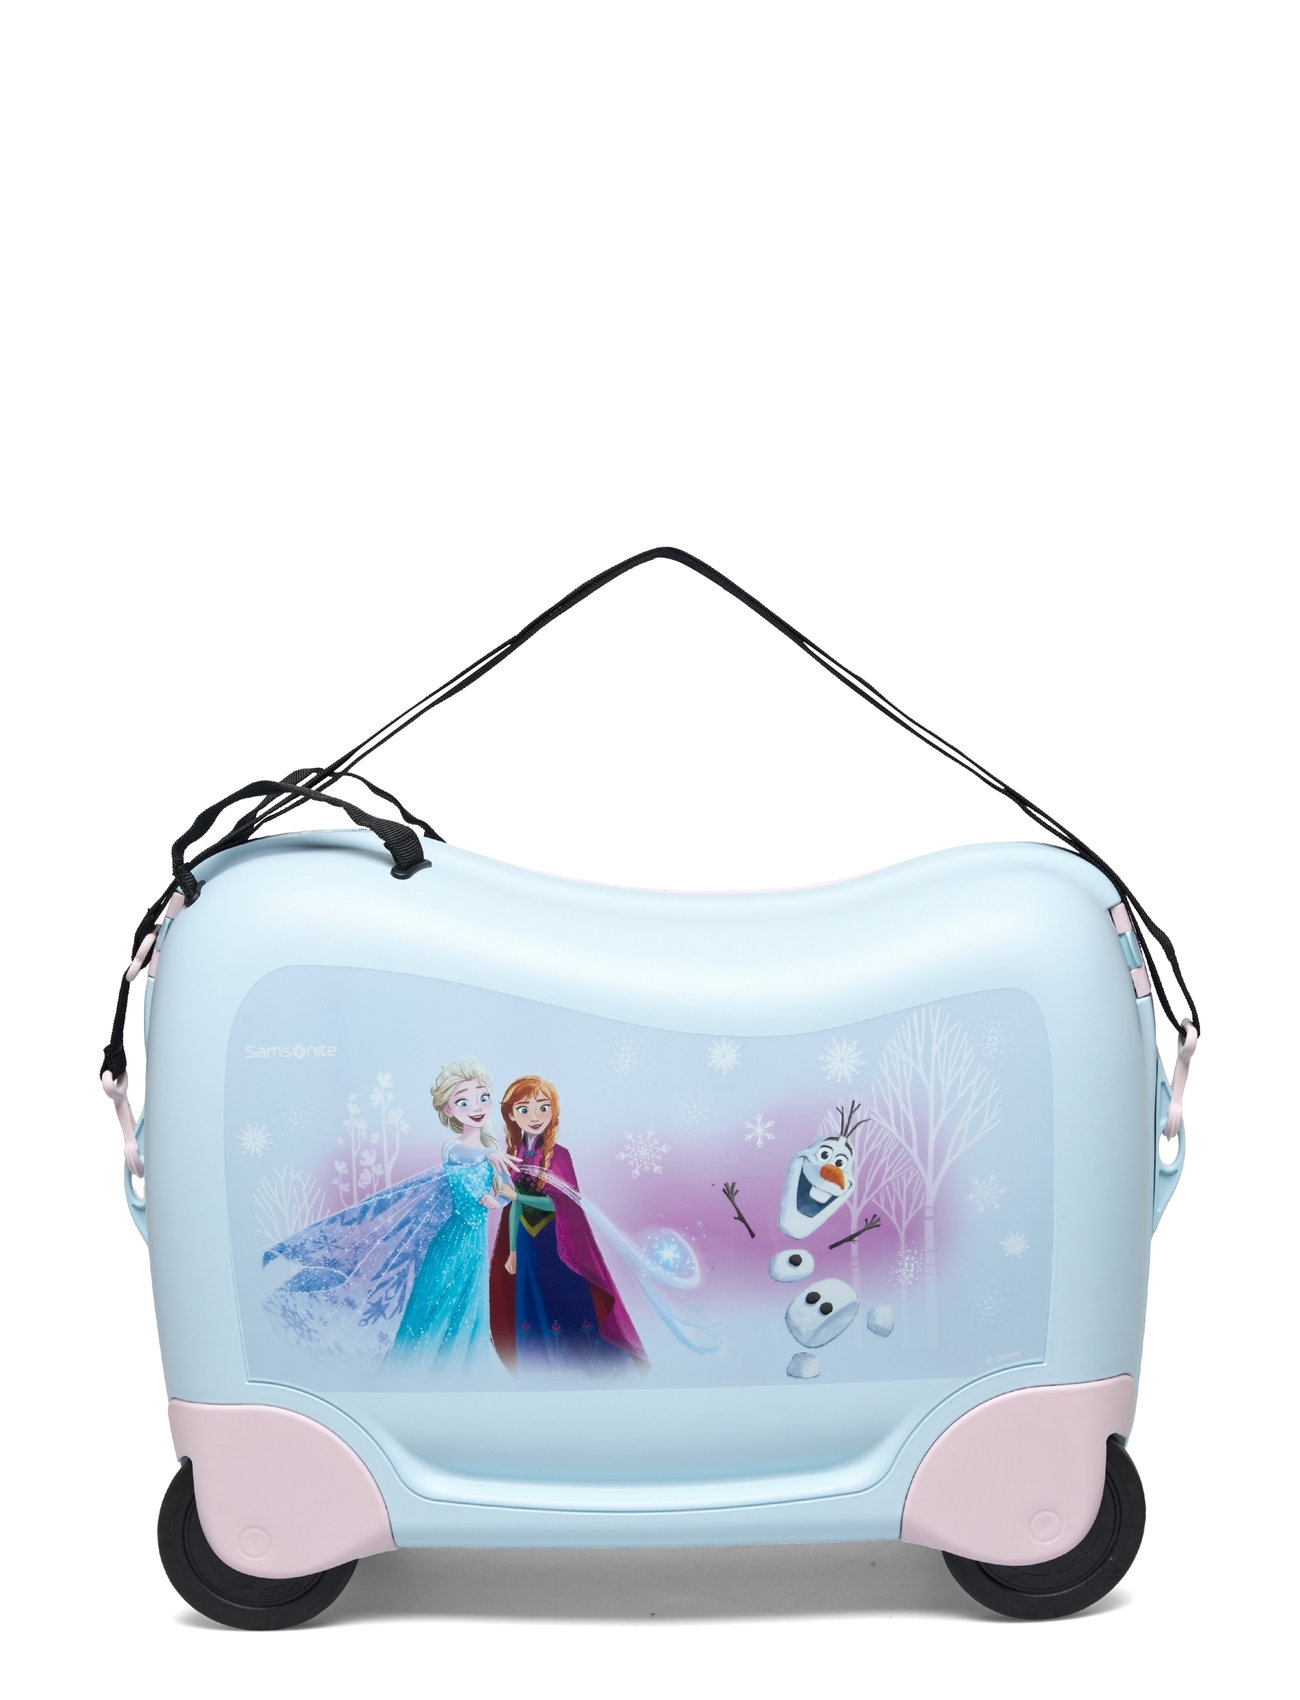 Dream2Go Ride-On Suitecase Disney Cars Accessories Bags Travel Bags Blue Samsonite